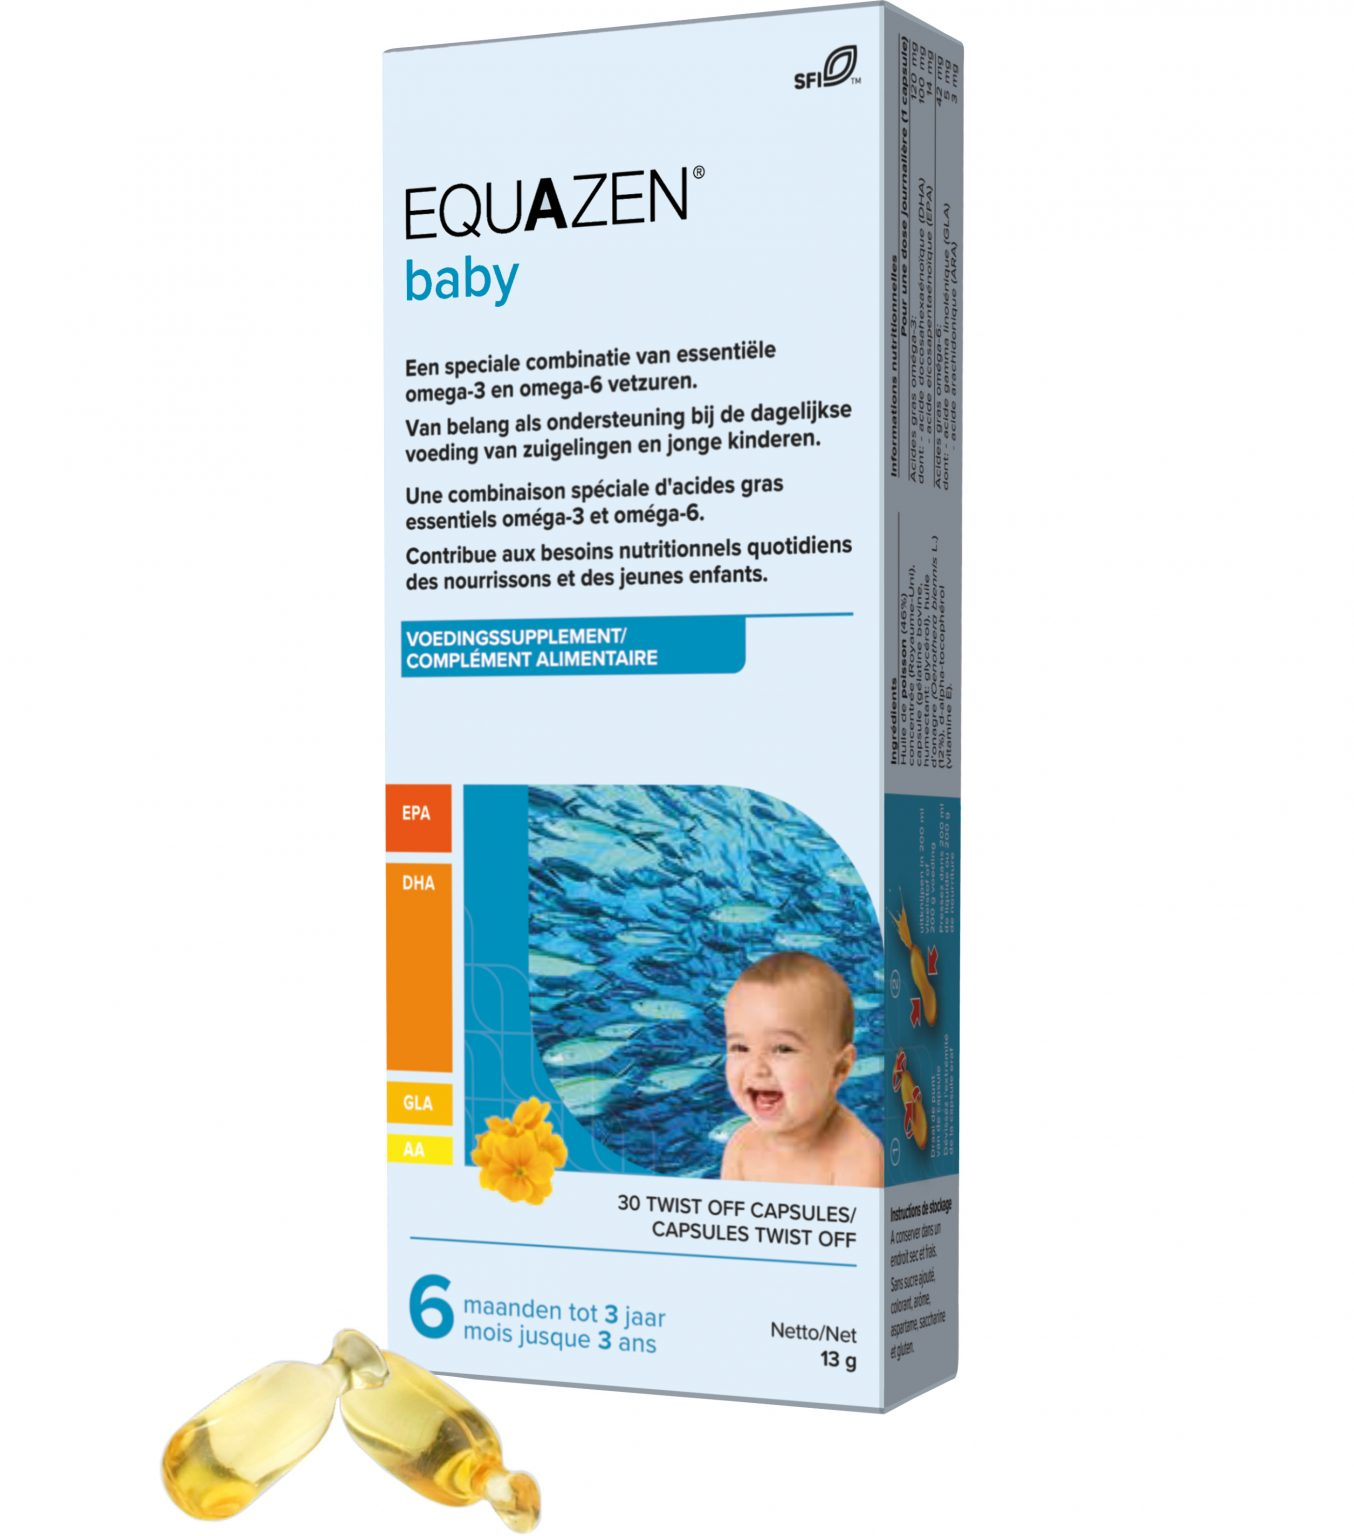 Equazen baby omega 3/6-vetzuren - 30 amp